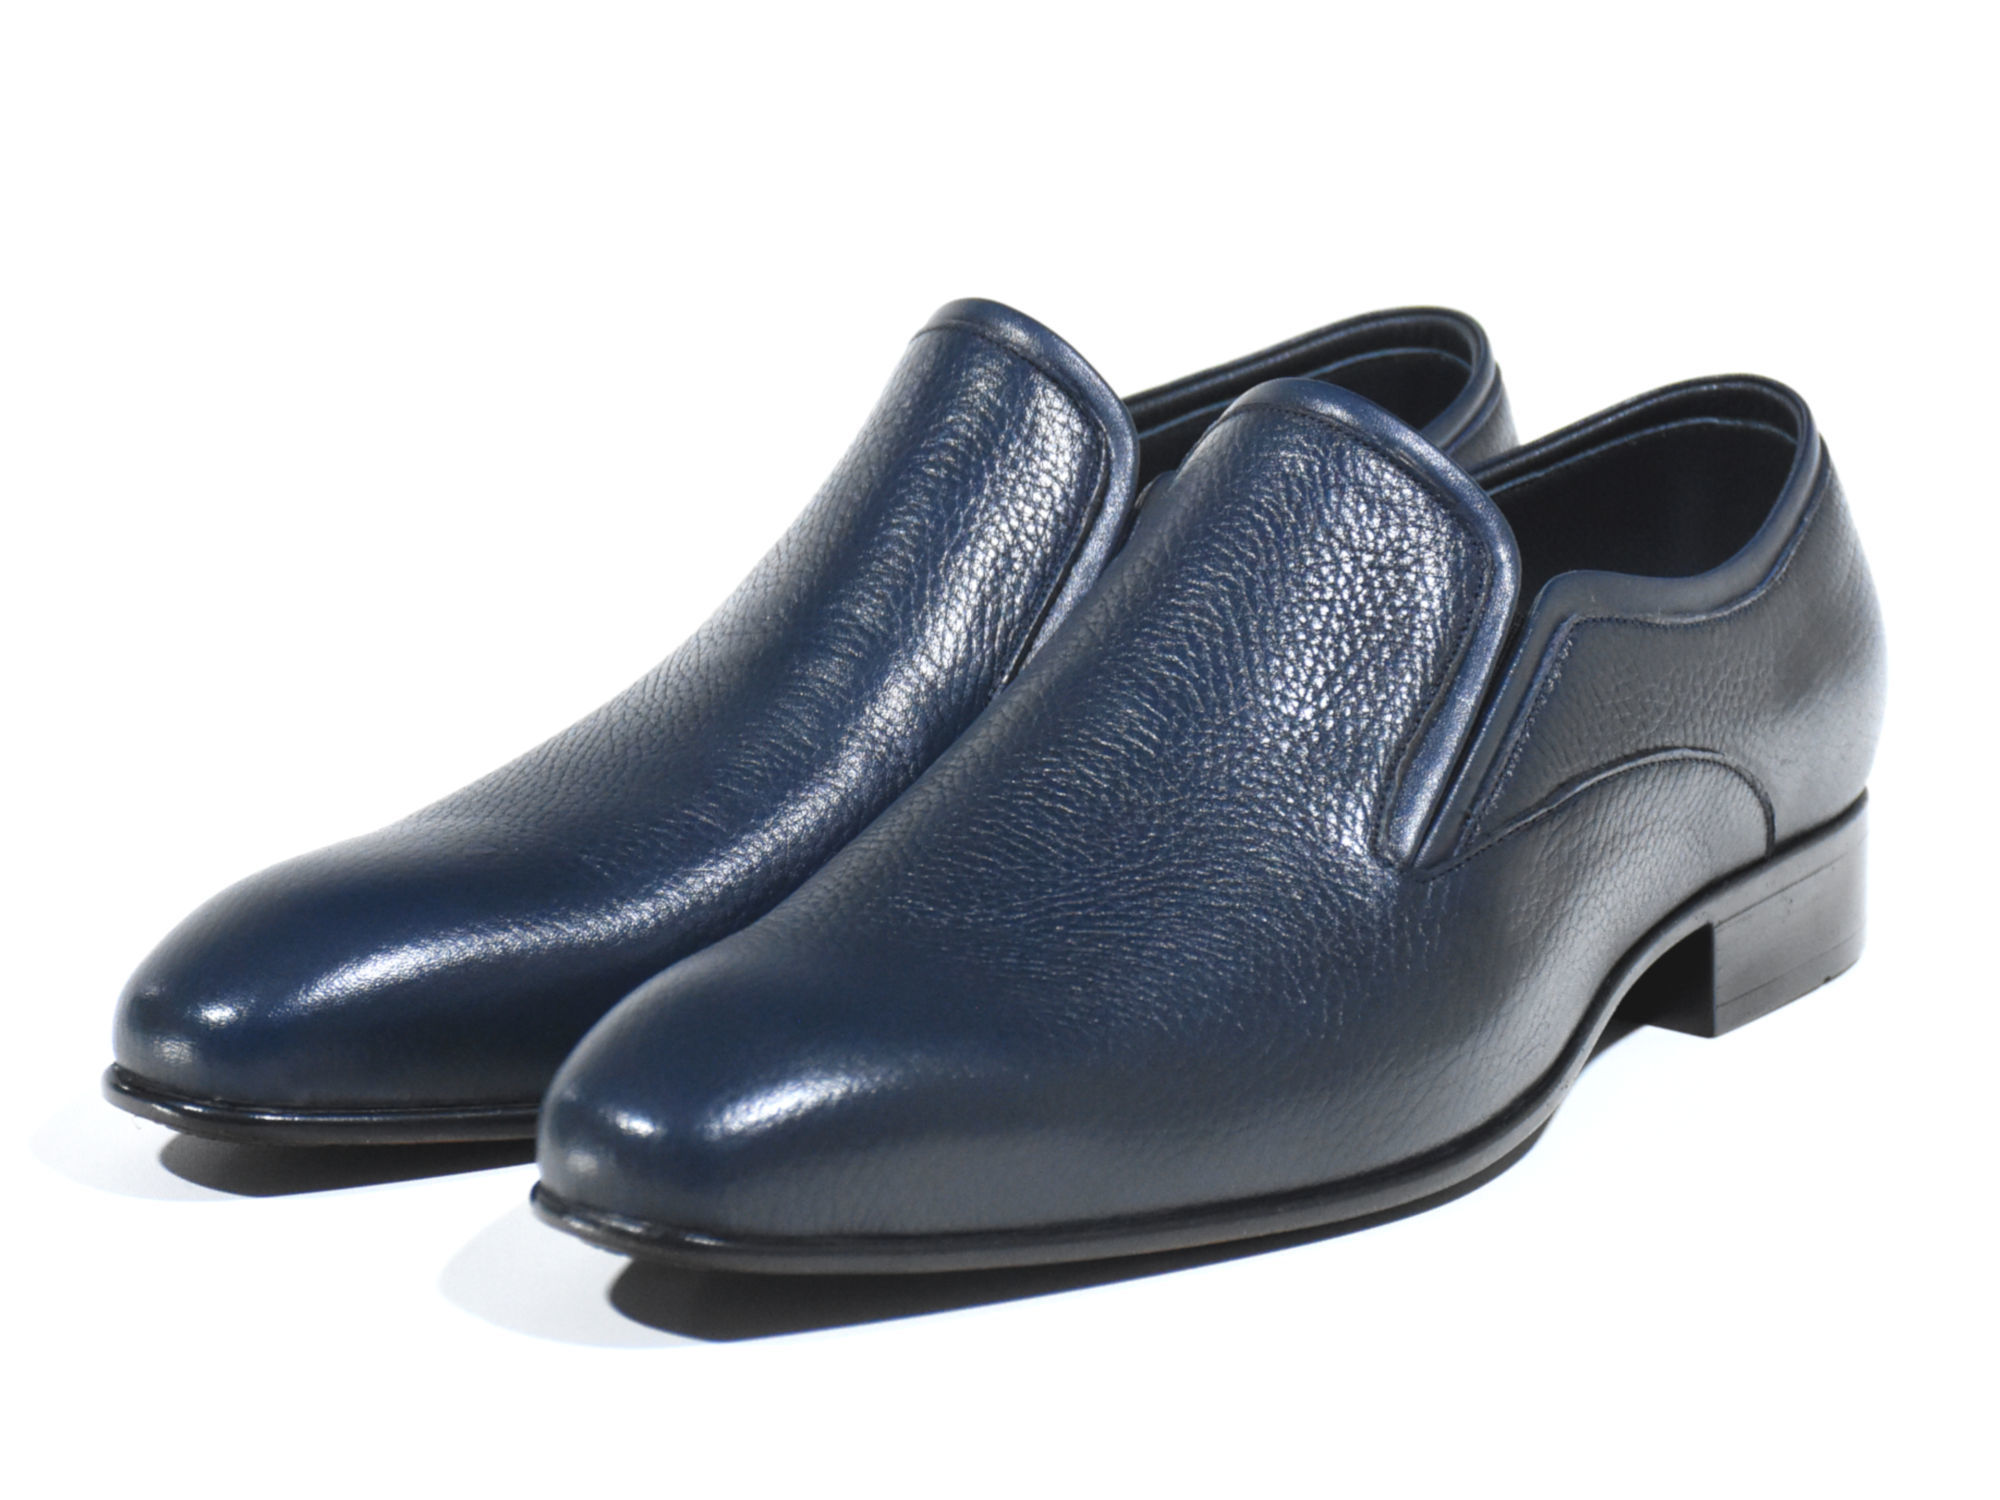 مدل ایتالیایی کفش مجلسی رزتی